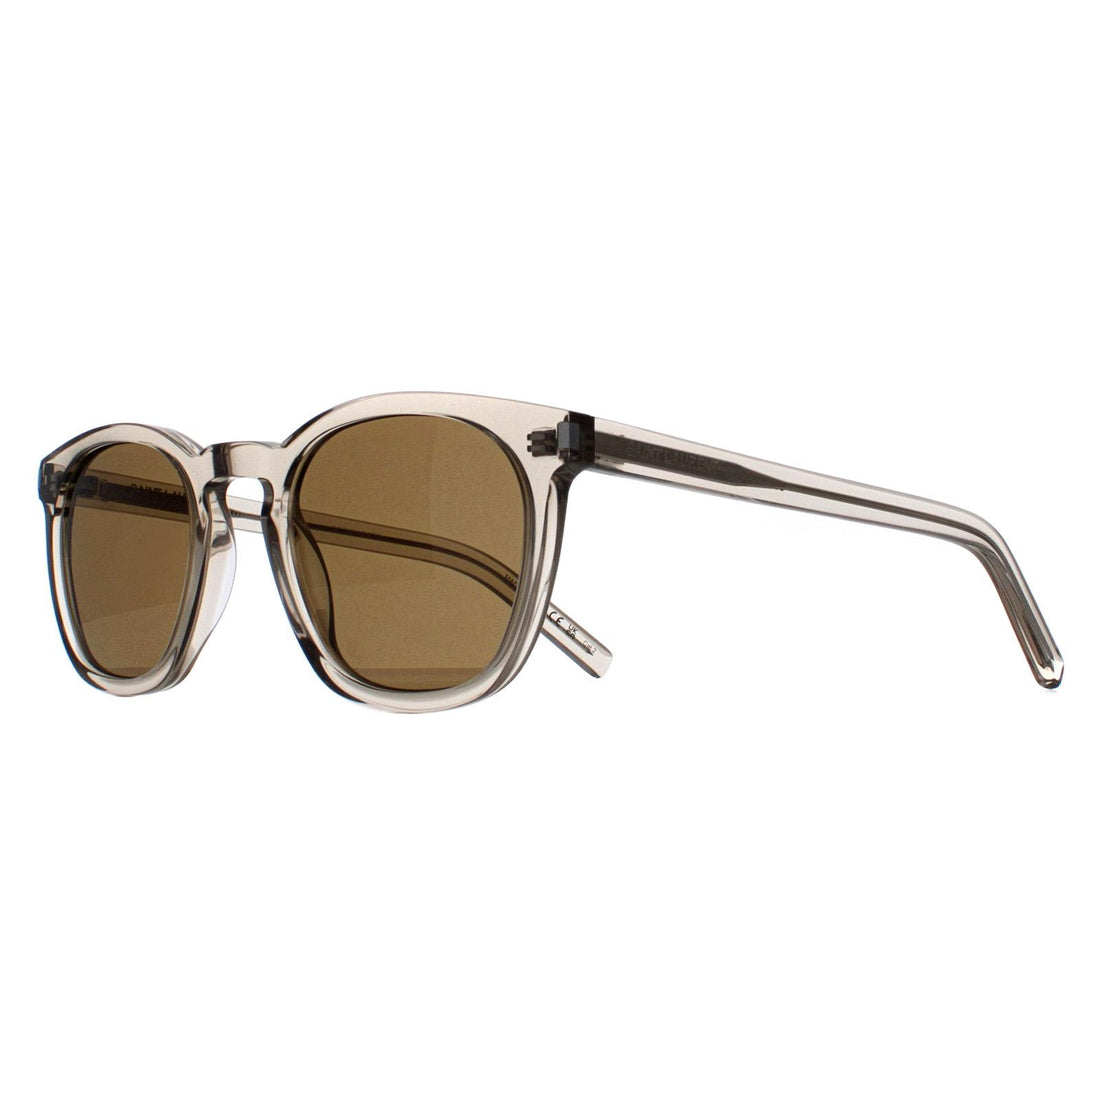 Saint Laurent Sunglasses SL28 047 Transparent Beige Brown